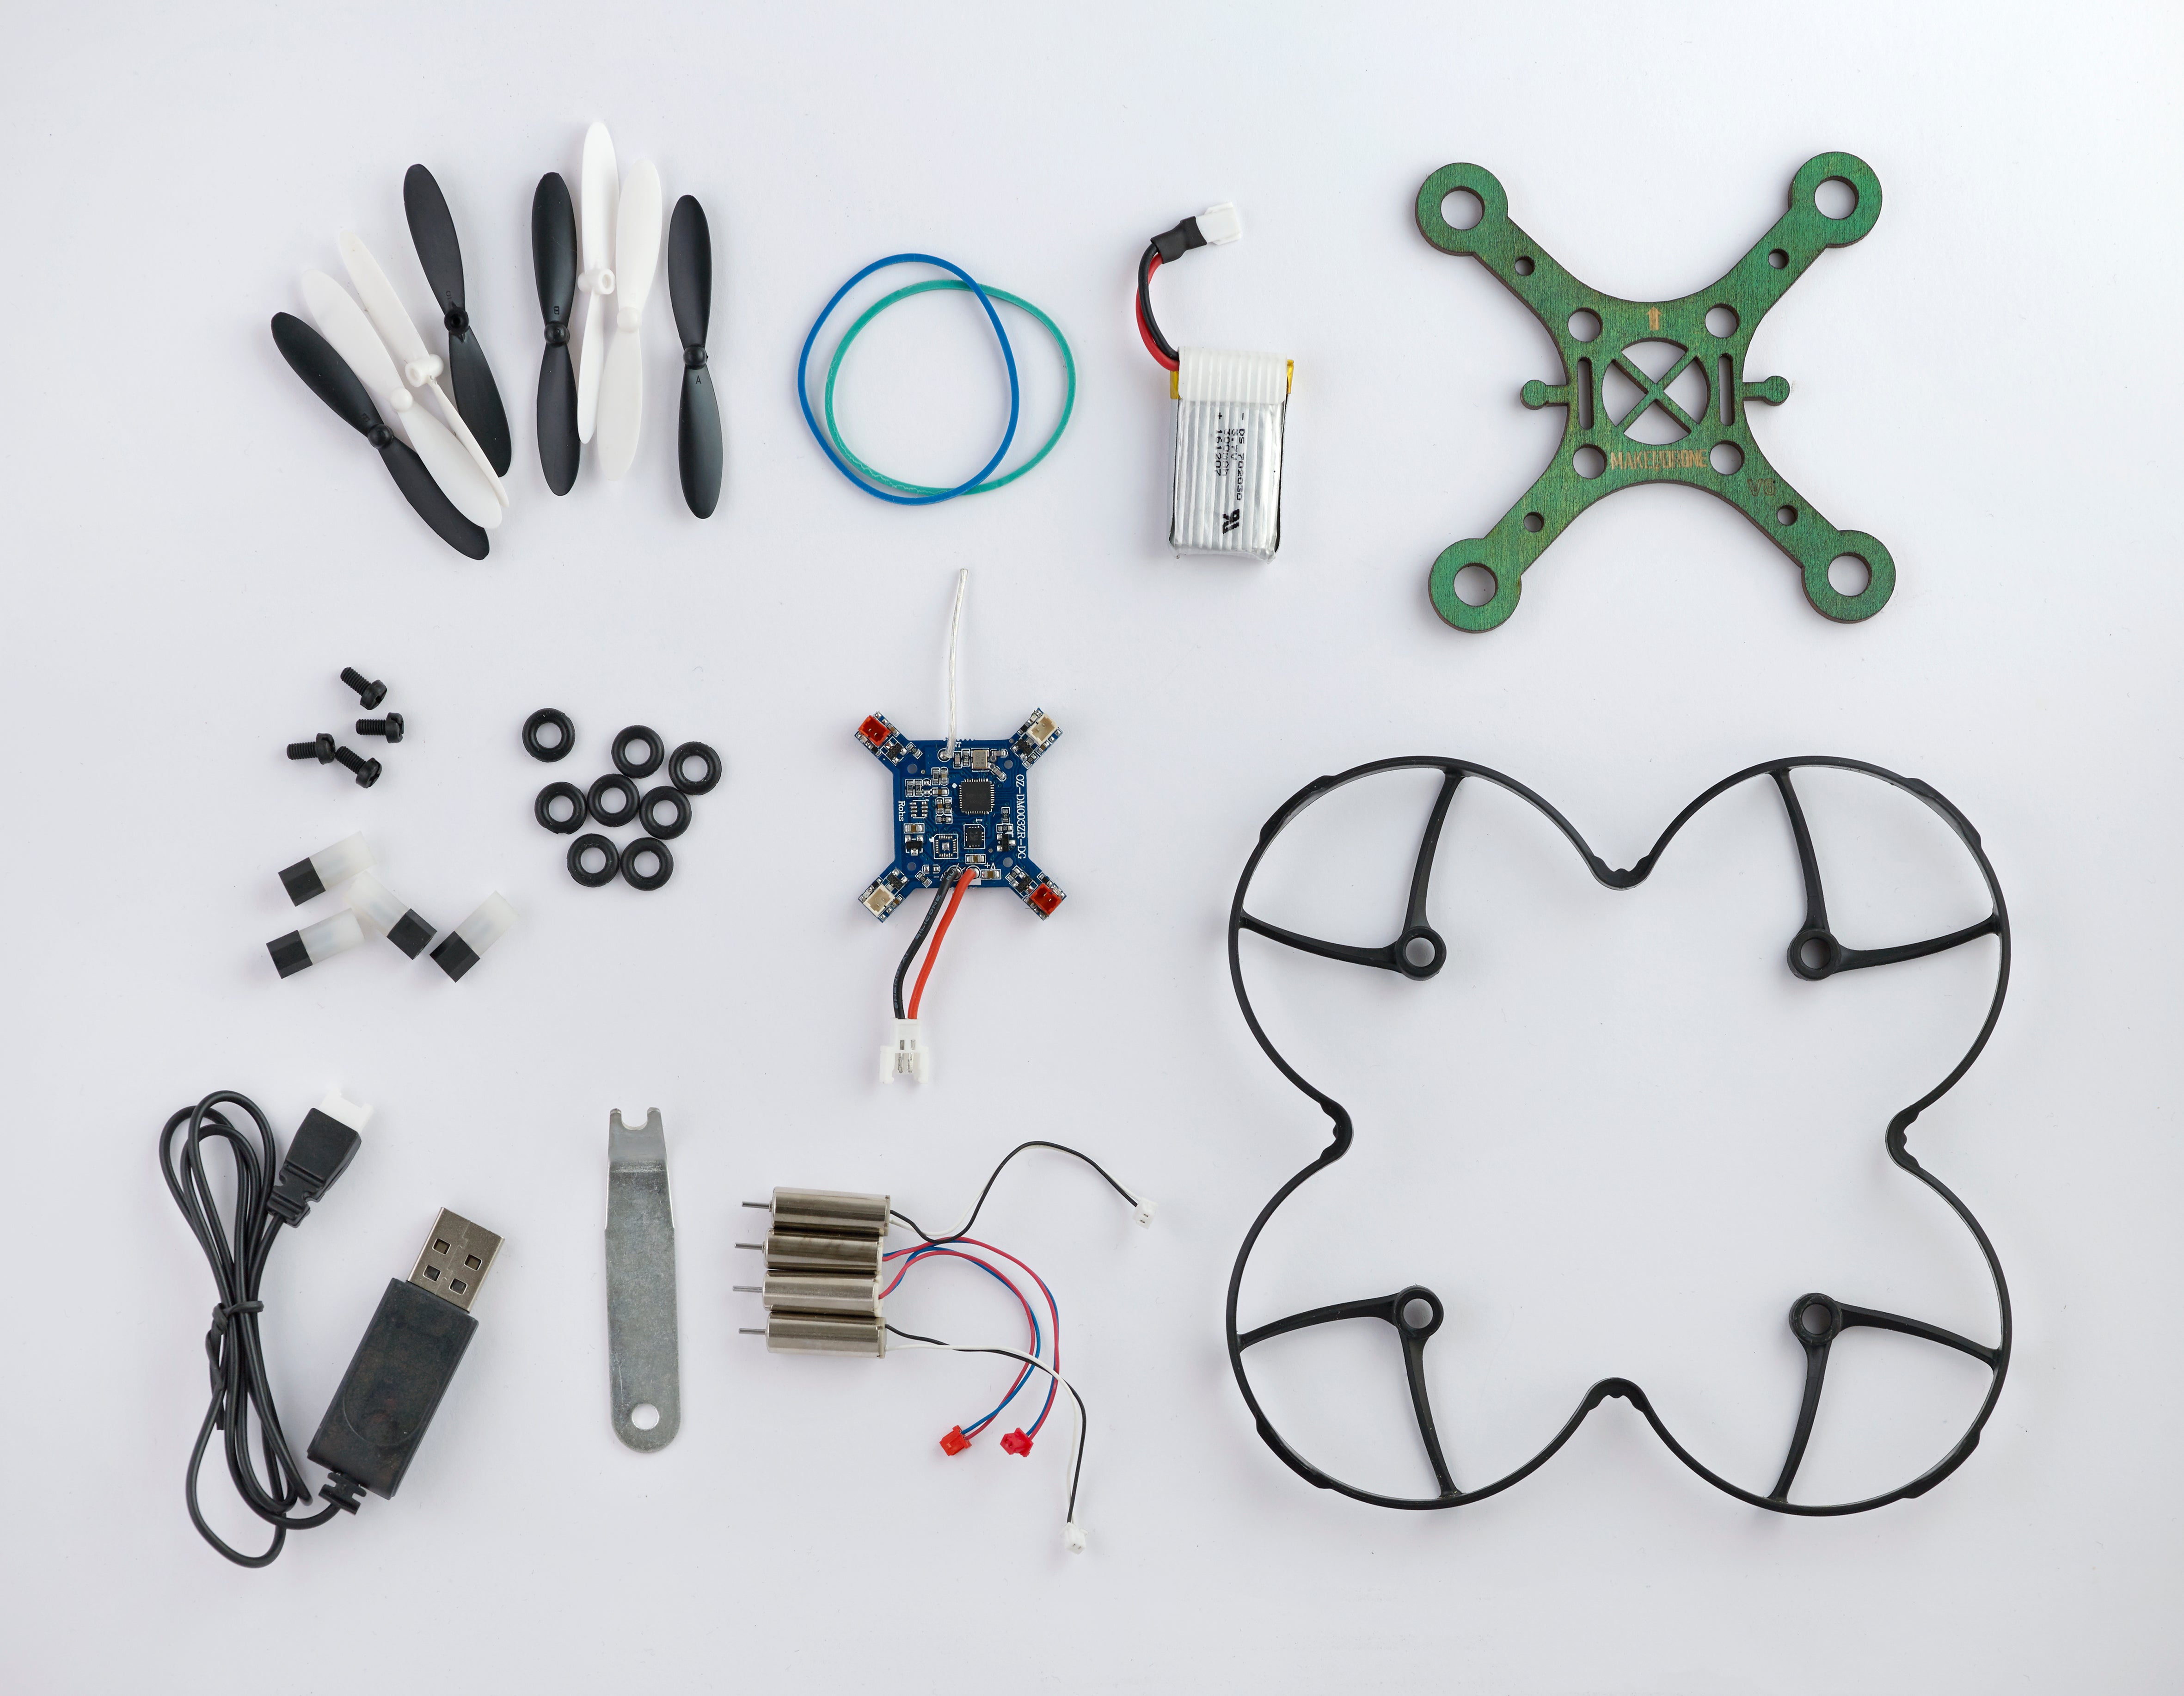 Kolibri skolesett/makerspace pakke: 12 dronebyggesett med kamera ekstra batterier, for laserkutter / 3d-printer